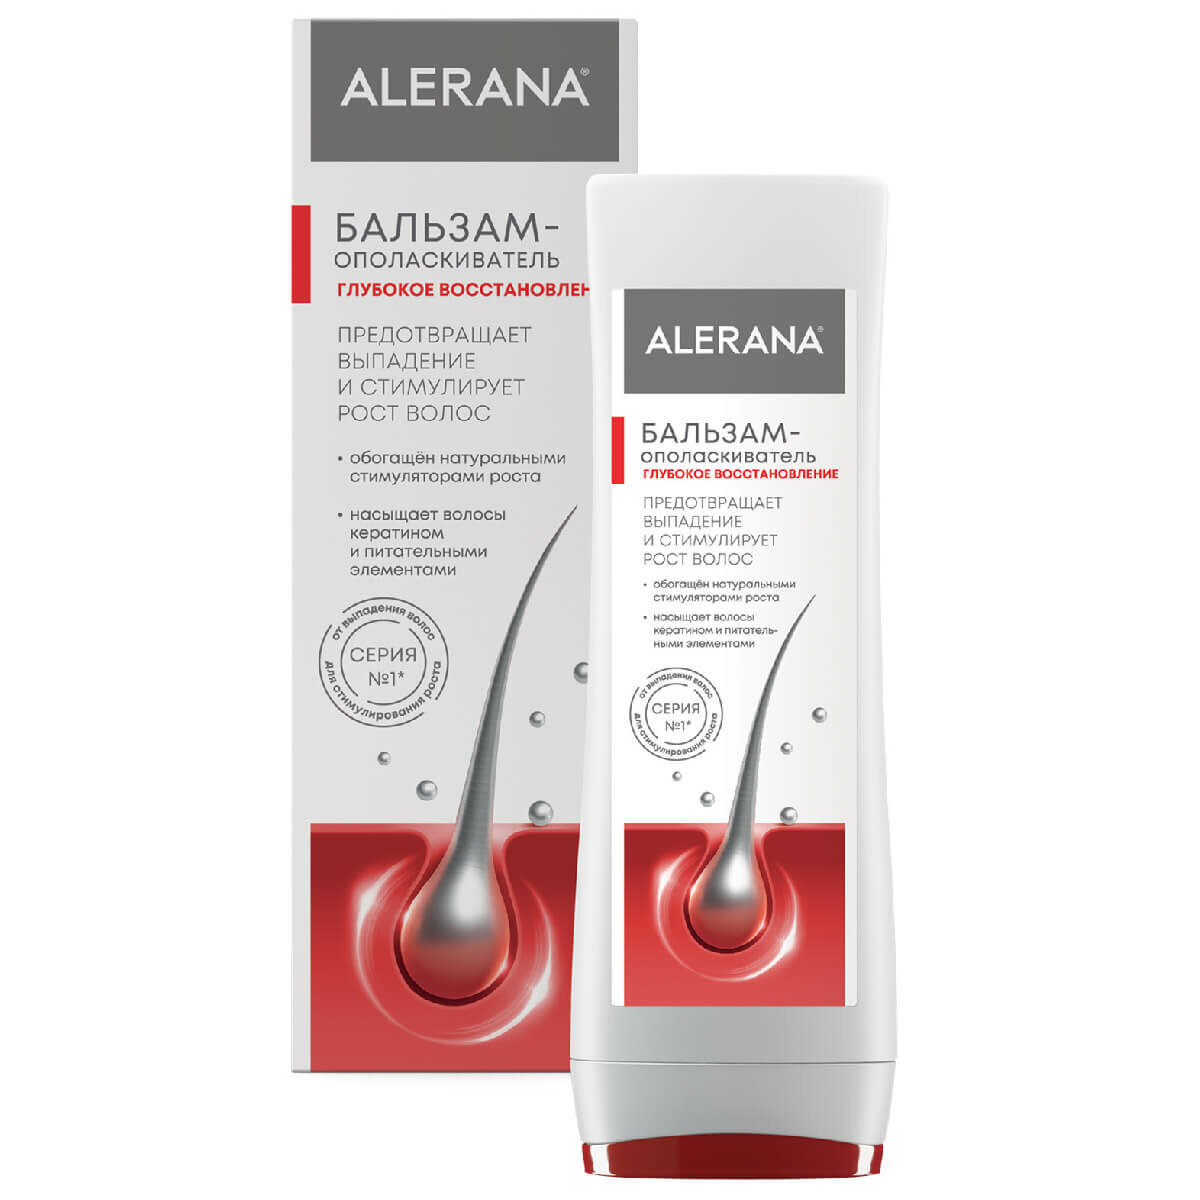 Alerana Pharma Care Бальзам-ополаскиватель для волос Глубокое восстановление, 200 мл, Alerana